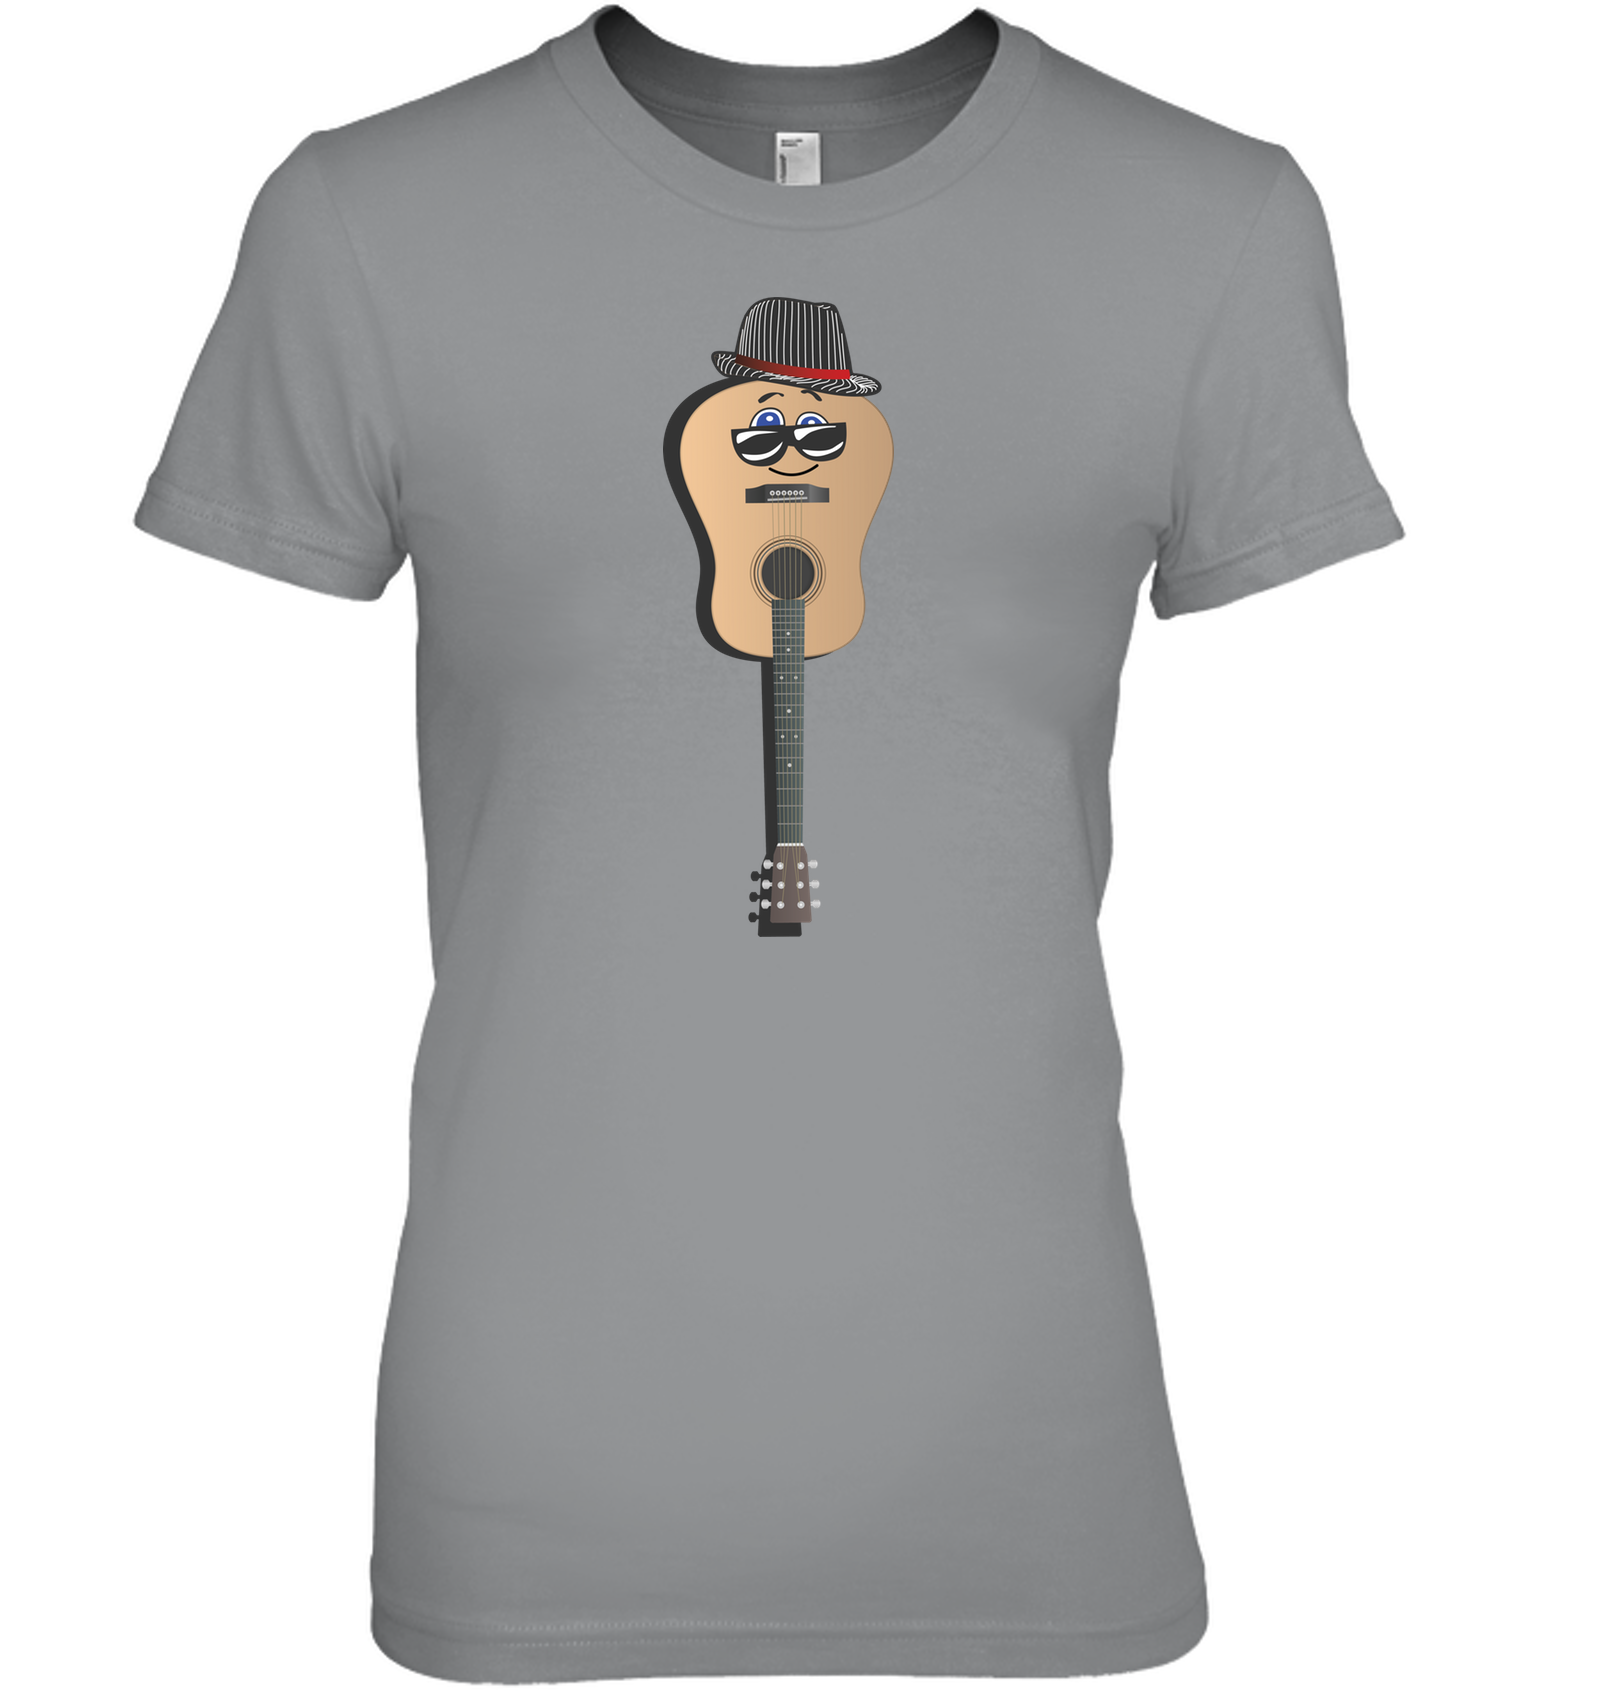 Guitar Man - Hanes Women's Nano-T® T-Shirt